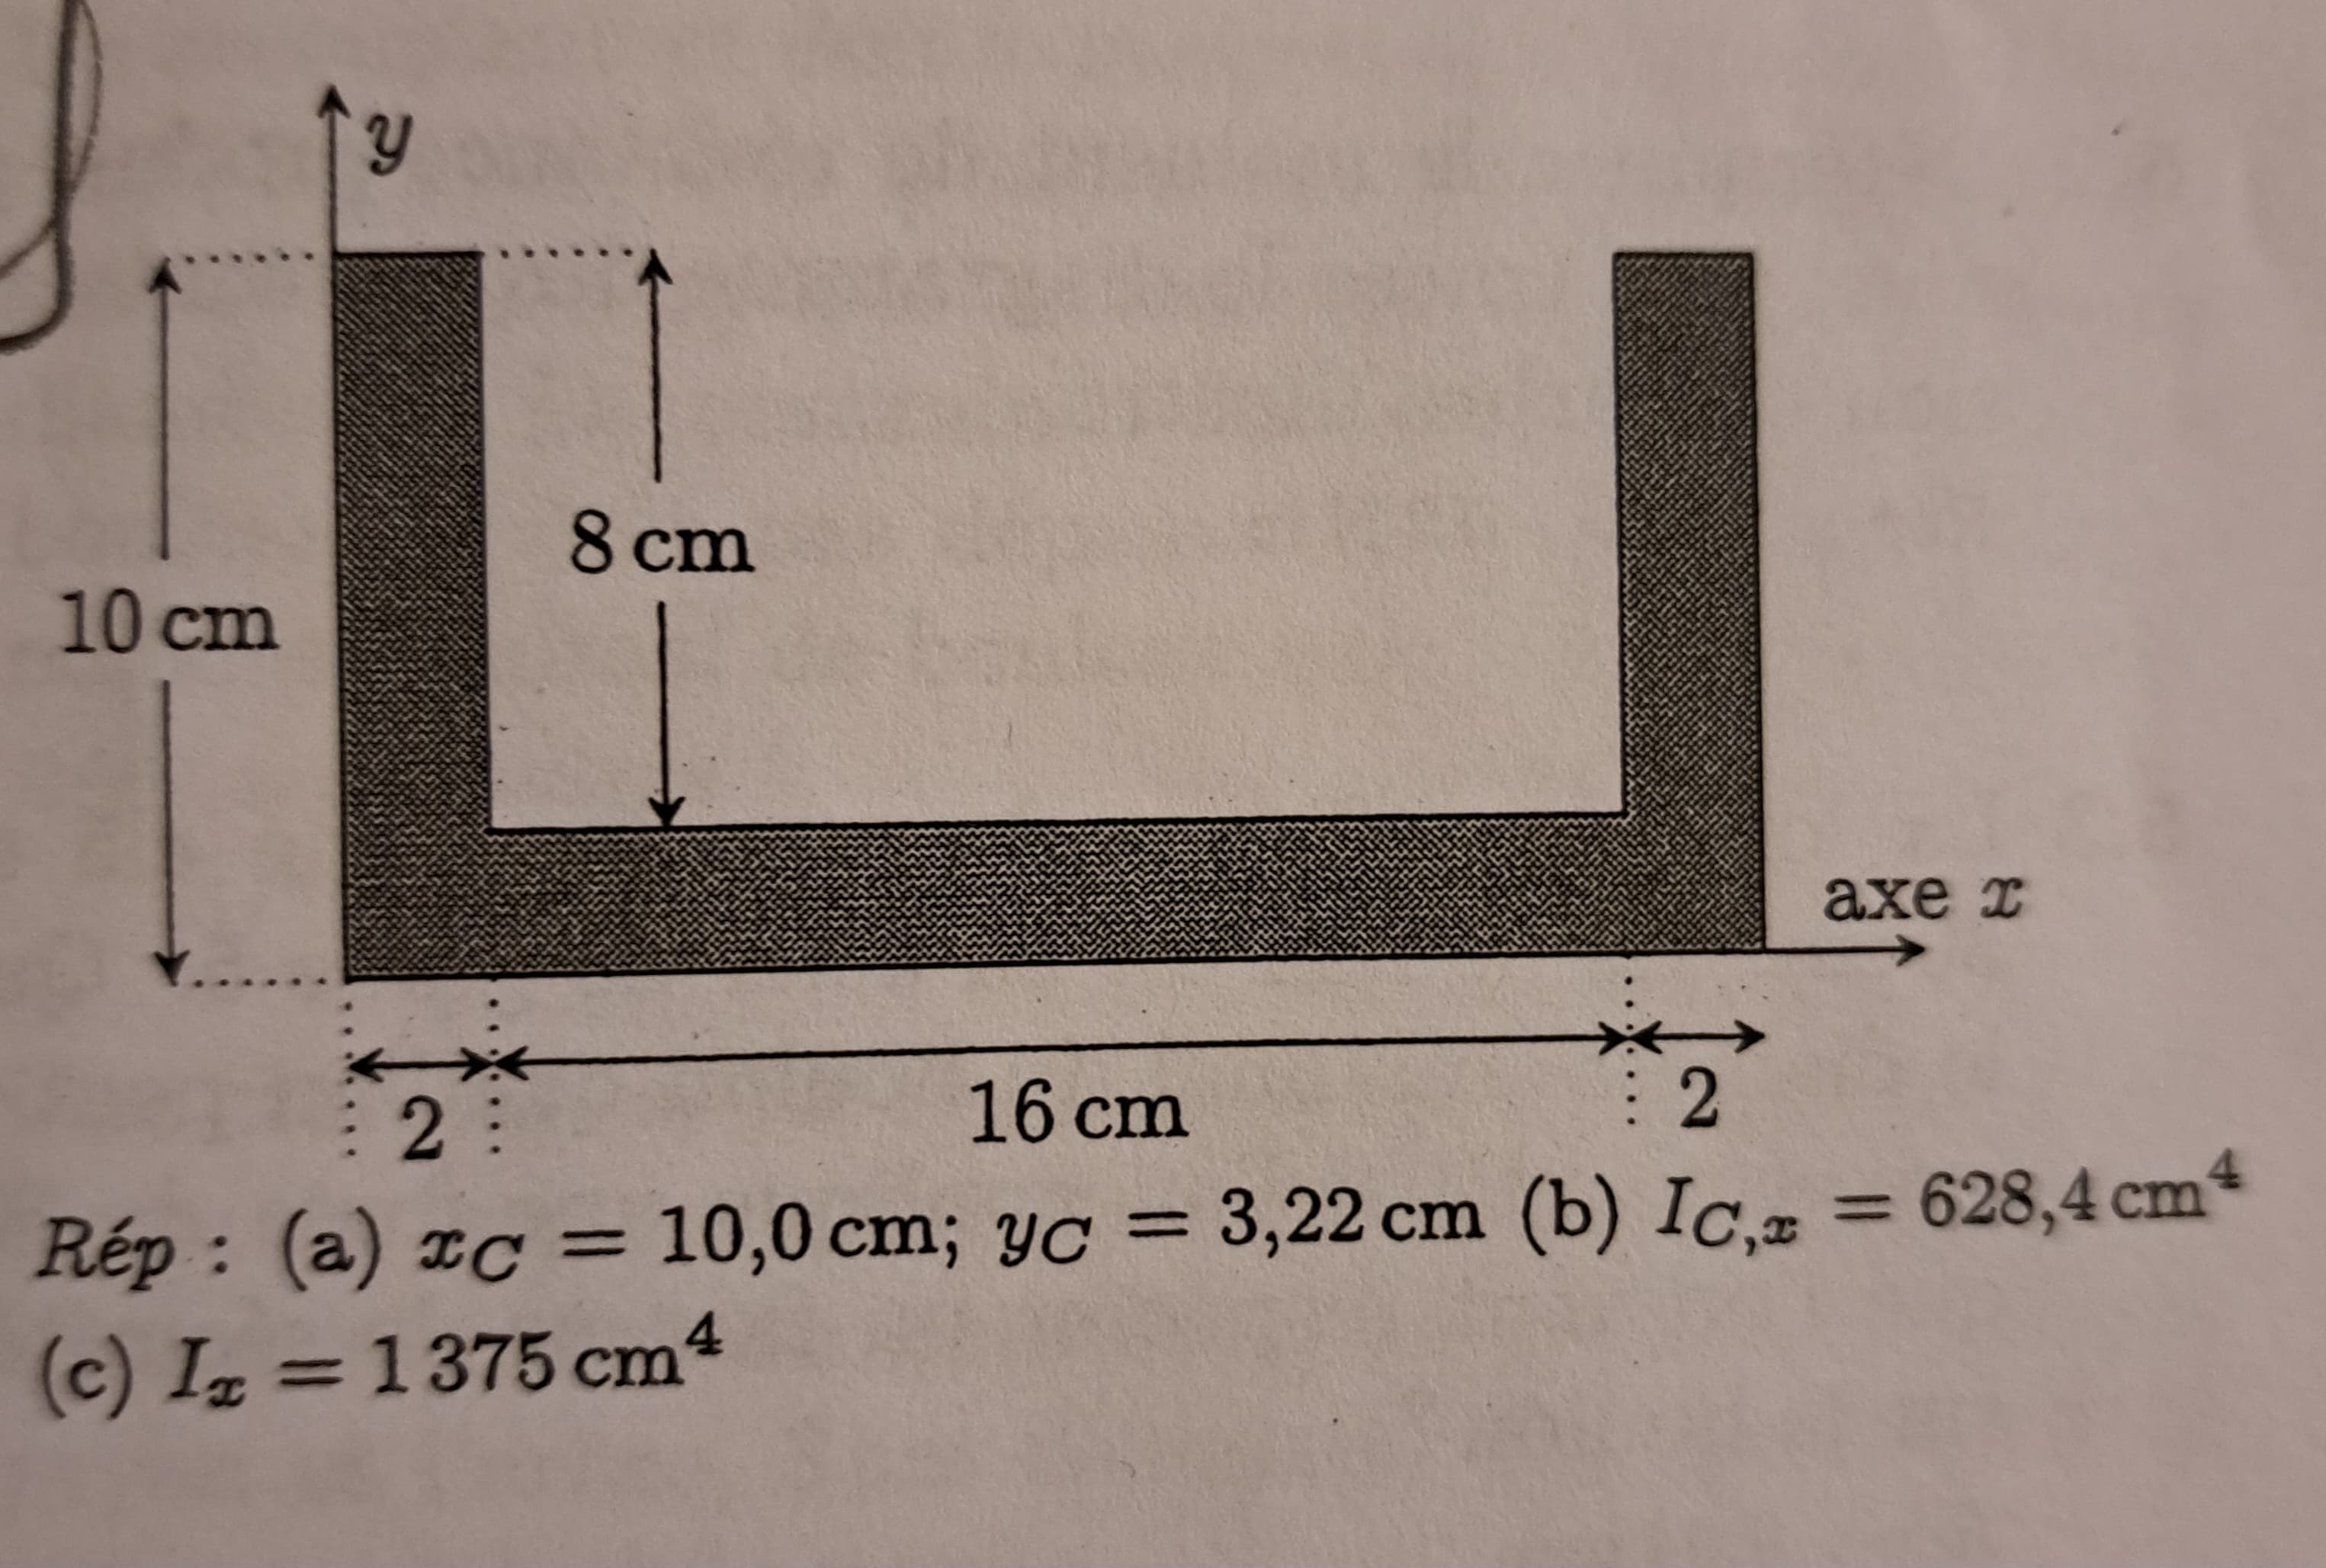 10 cm
Y
8 cm
axe I
2:
16 cm
: 2
Rép: (a) xc = 10,0 cm; yc = 3,22 cm (b) Ic, = 628,4 cm4
(c) Iz=1375 cm4